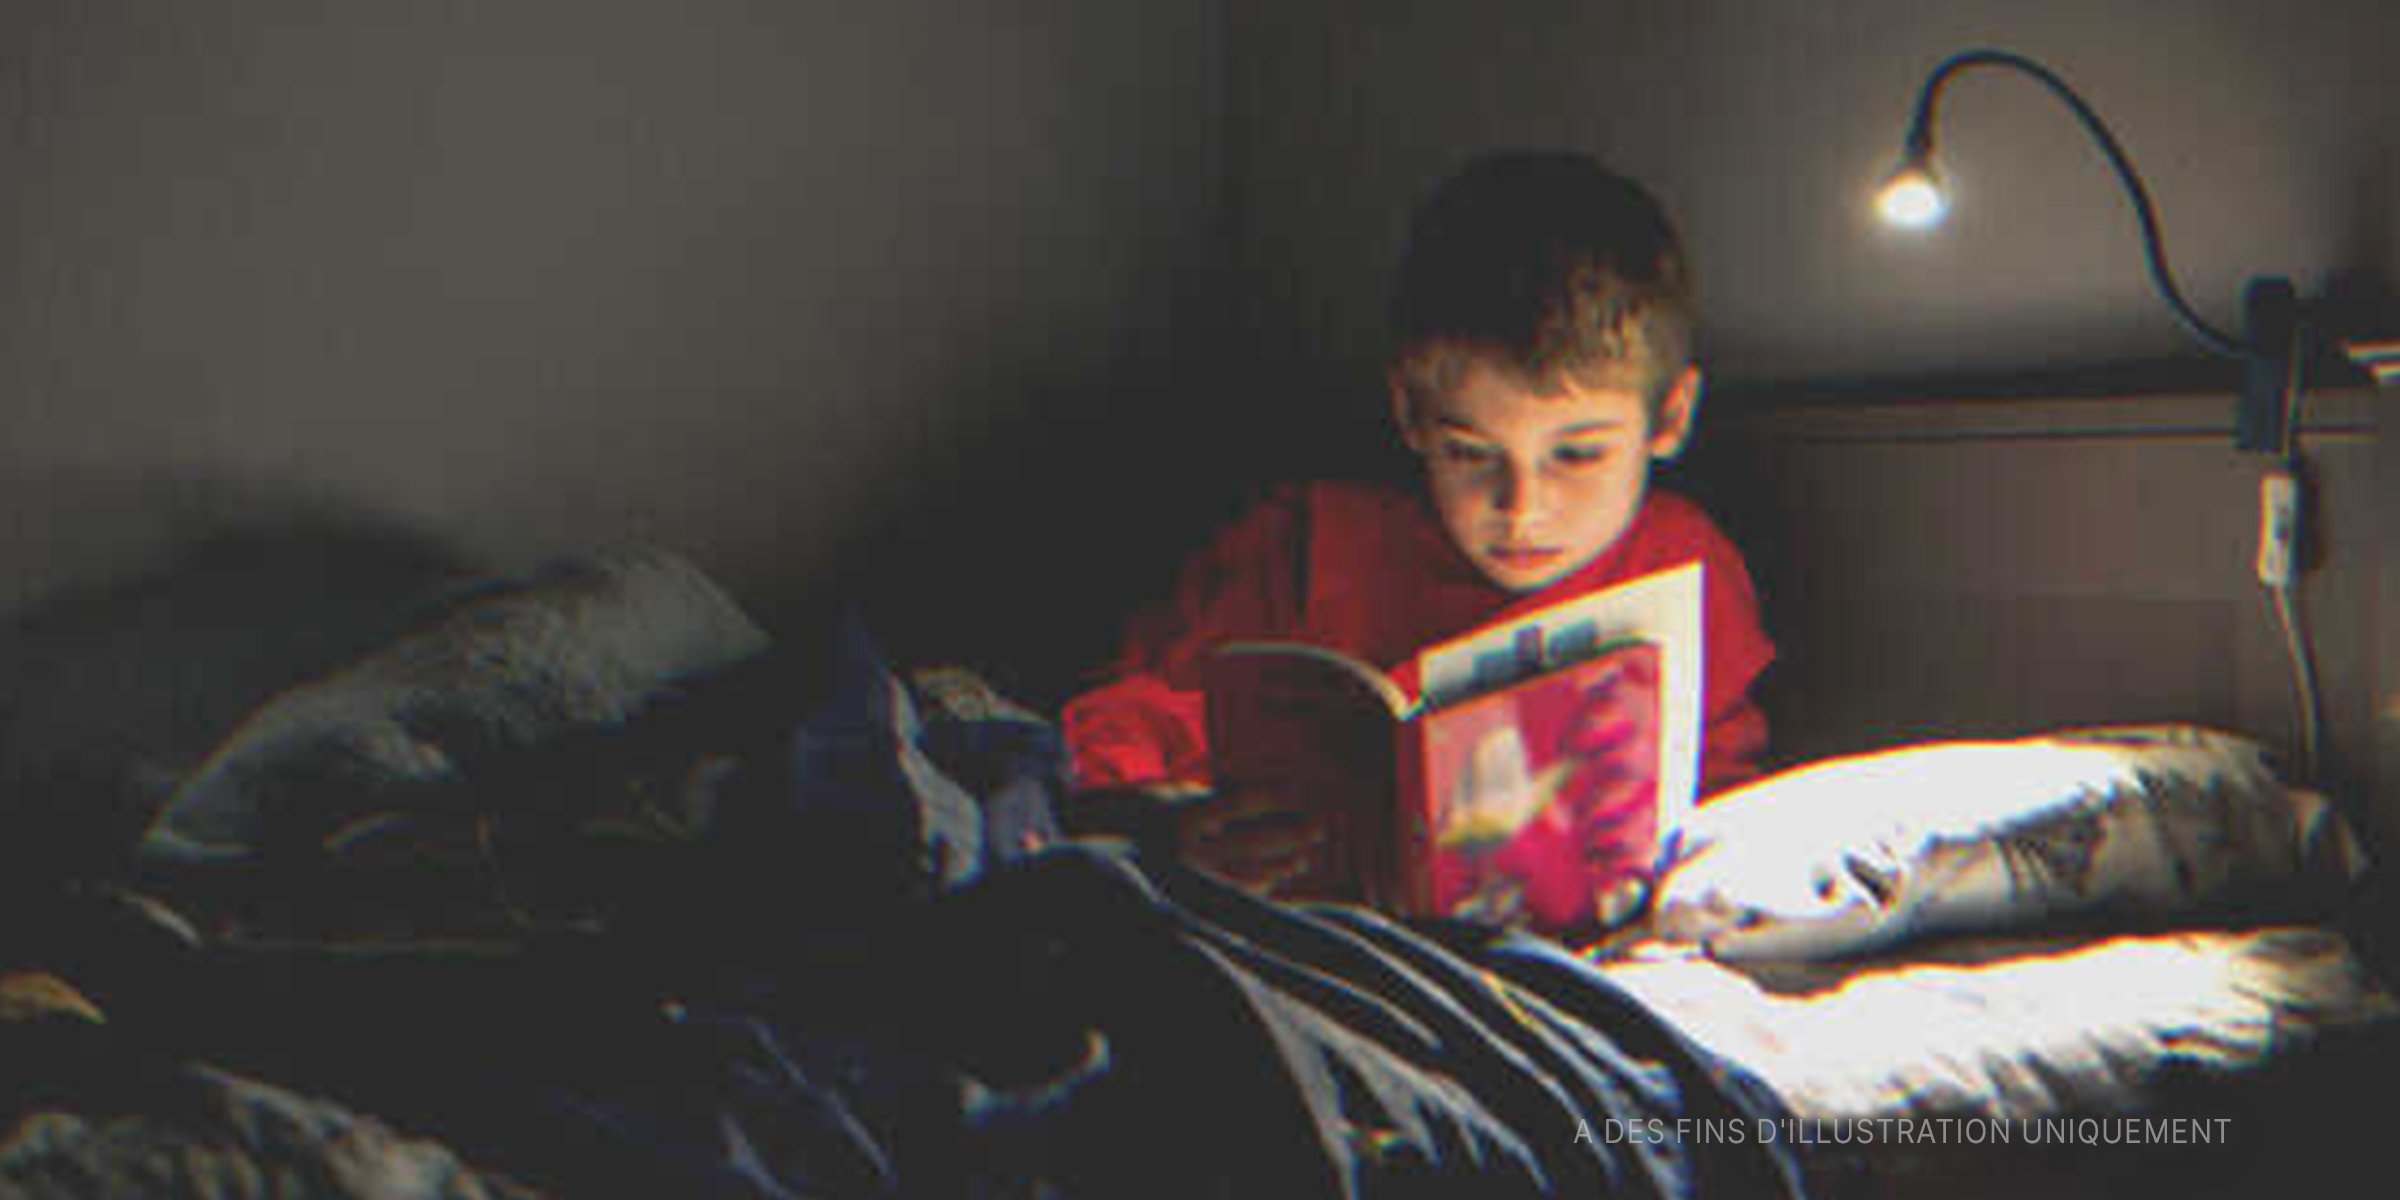 Un petit garçon en pleine lecture dans son lit | Source : Getty Images